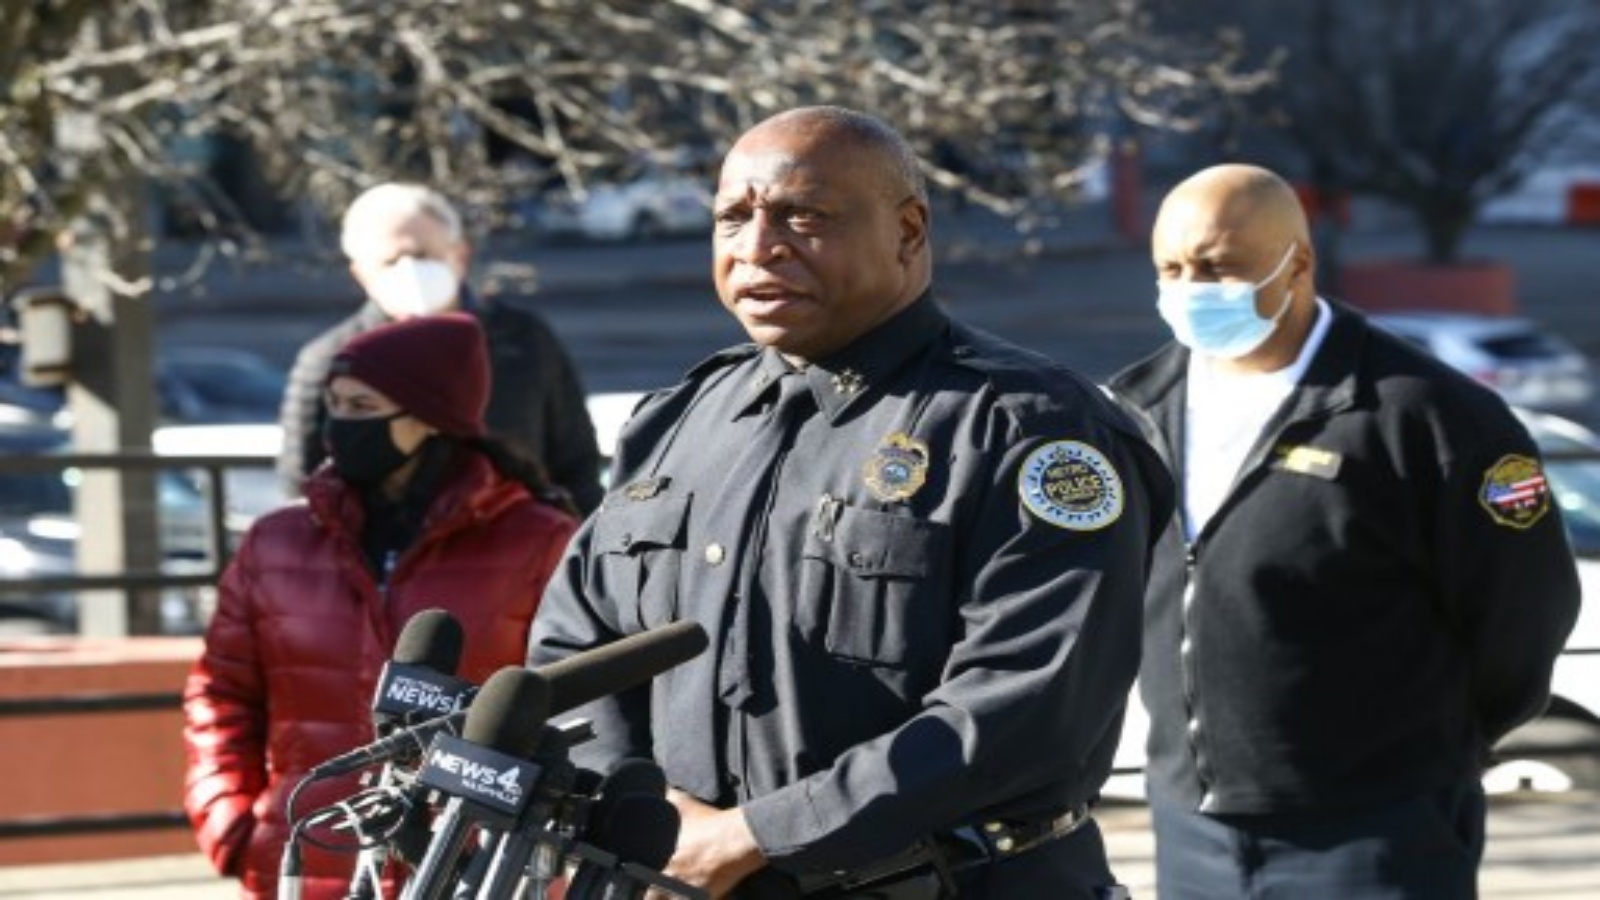 رئيس شرطة ناشفيل جون دريك يتحدث خلال مؤتمر صحفي عن تفجير يوم عيد الميلاد في 26 ديسمبر 2020 في ناشفيل ، تينيسي